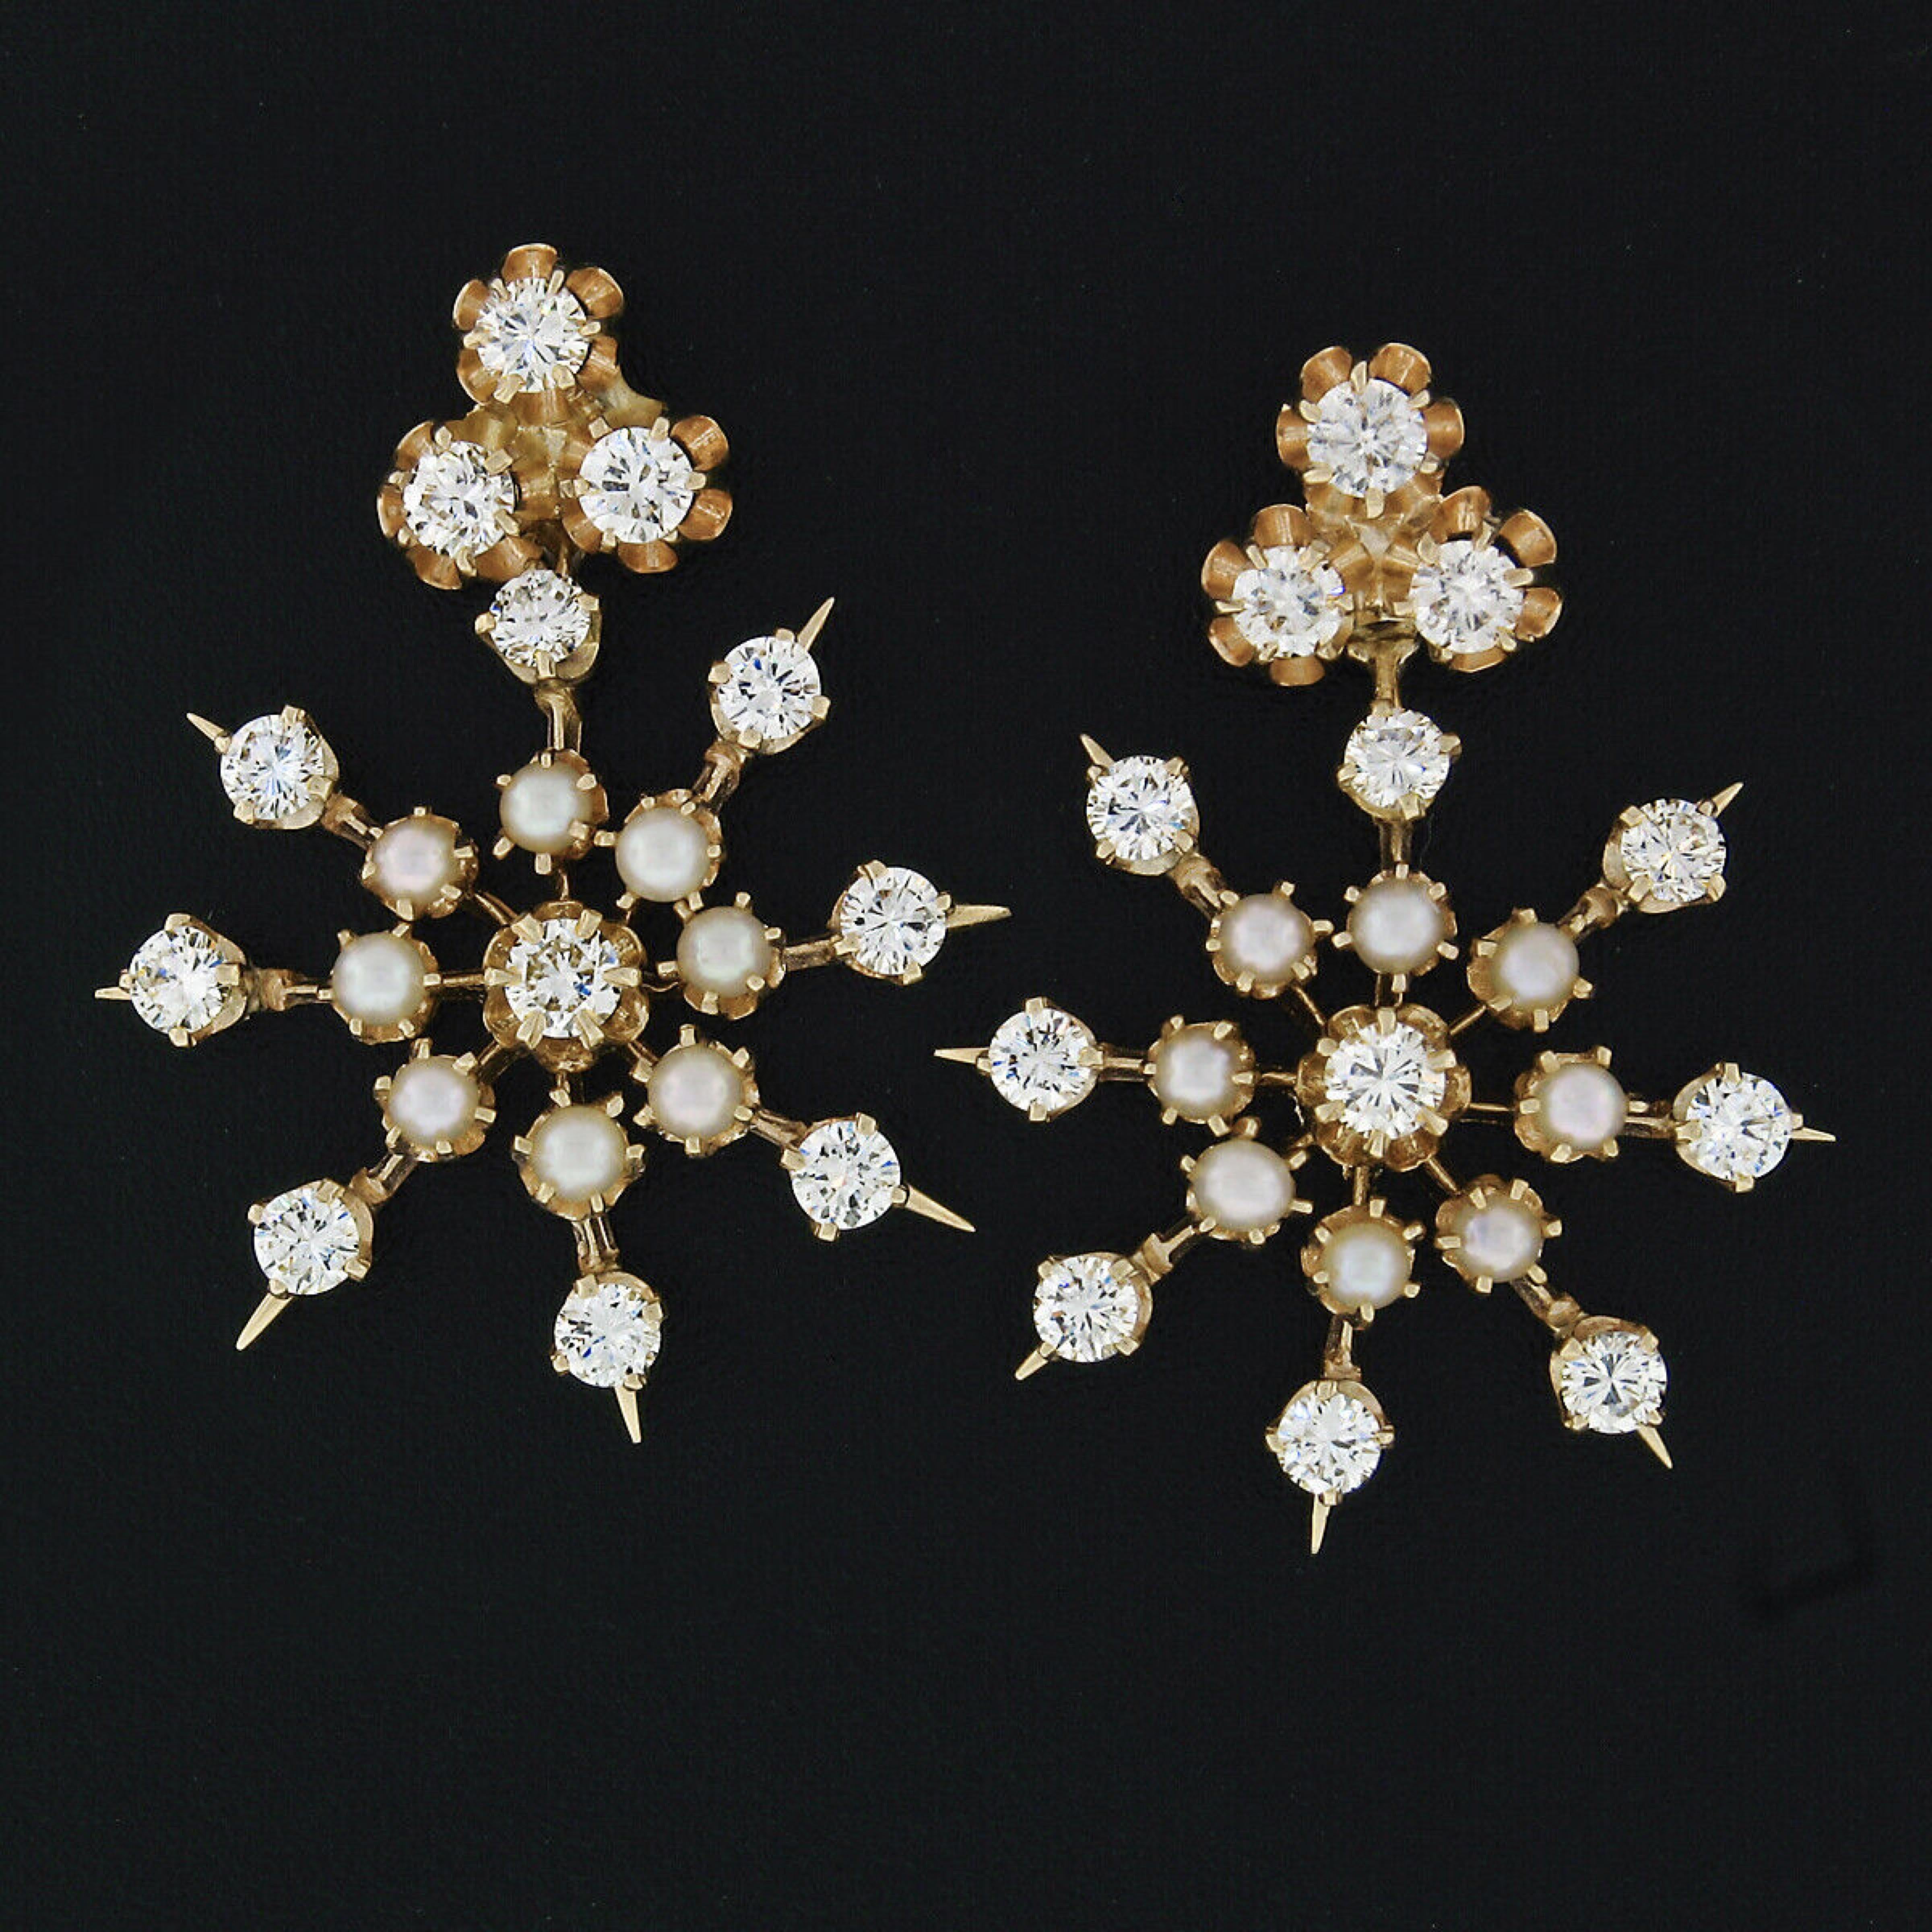 Voici une belle paire de boucles d'oreilles vintage en diamant et perle en or jaune 14k. Les boucles d'oreilles présentent des clous en diamant simples, composés de 3 pierres, chacune étant sertie dans des paniers de style bouton d'or. De plus, à